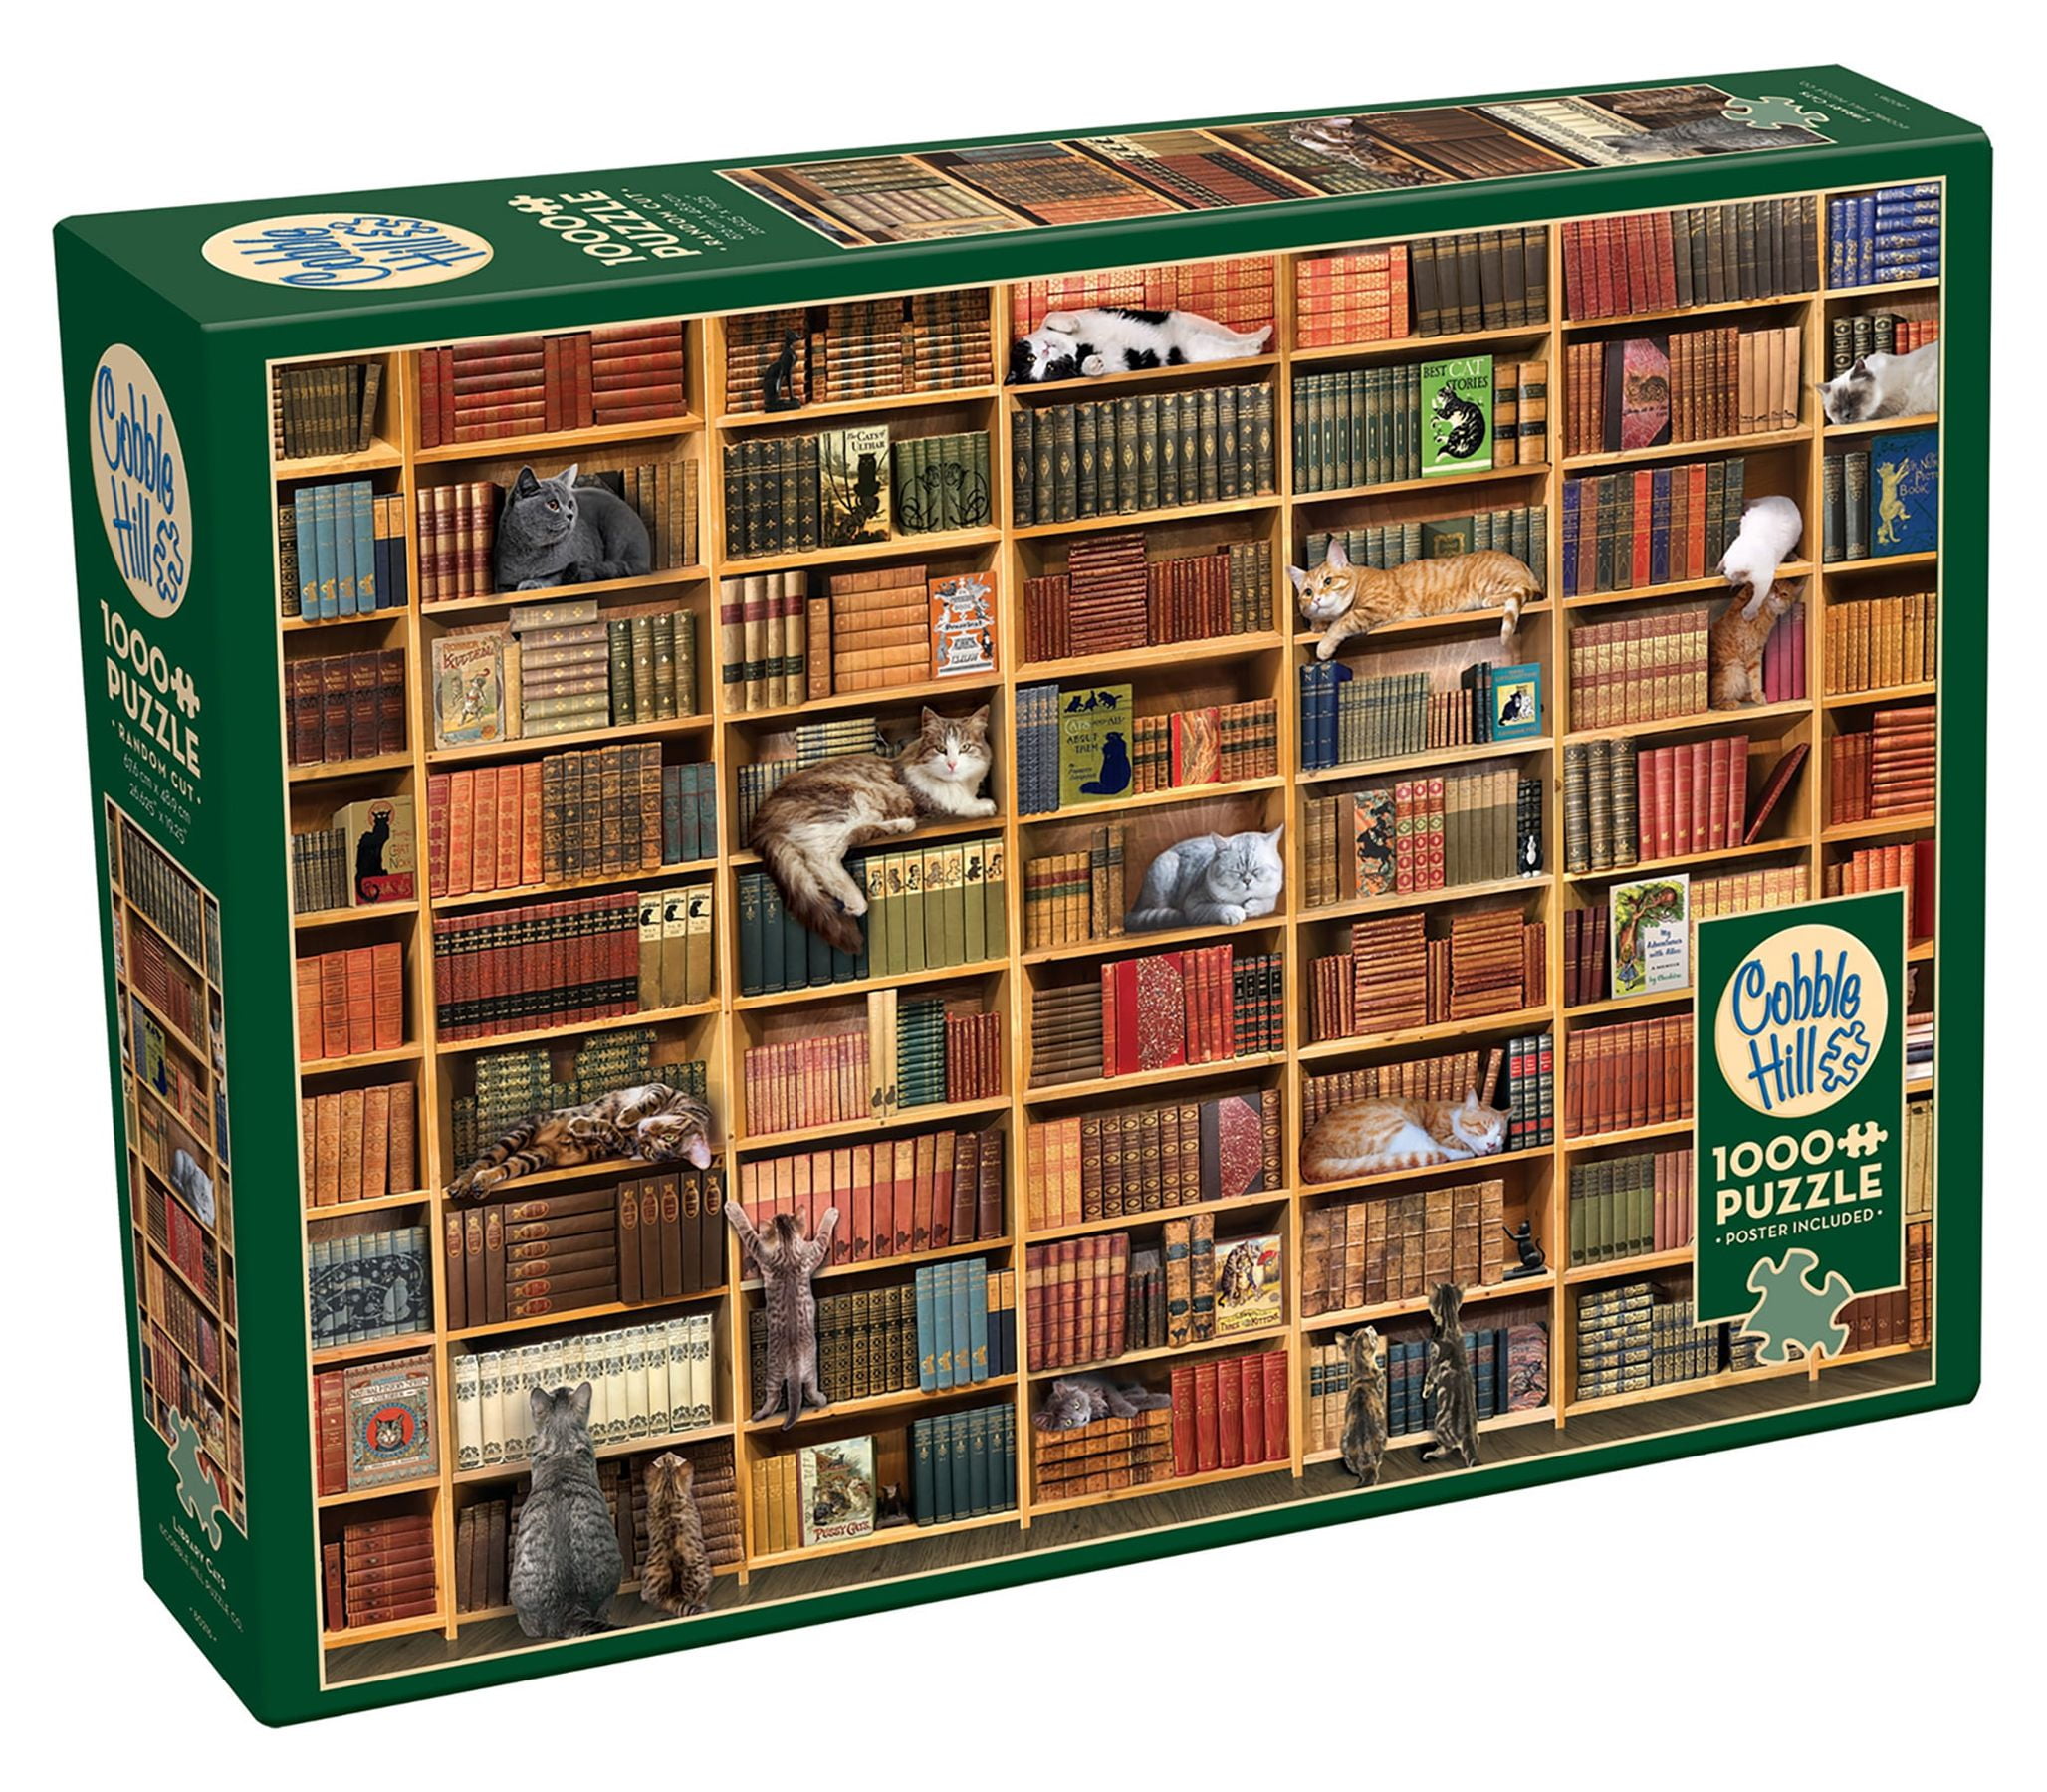 Puzzle Cats (1650pz) - 1000 Piece Jigsaw Puzzle